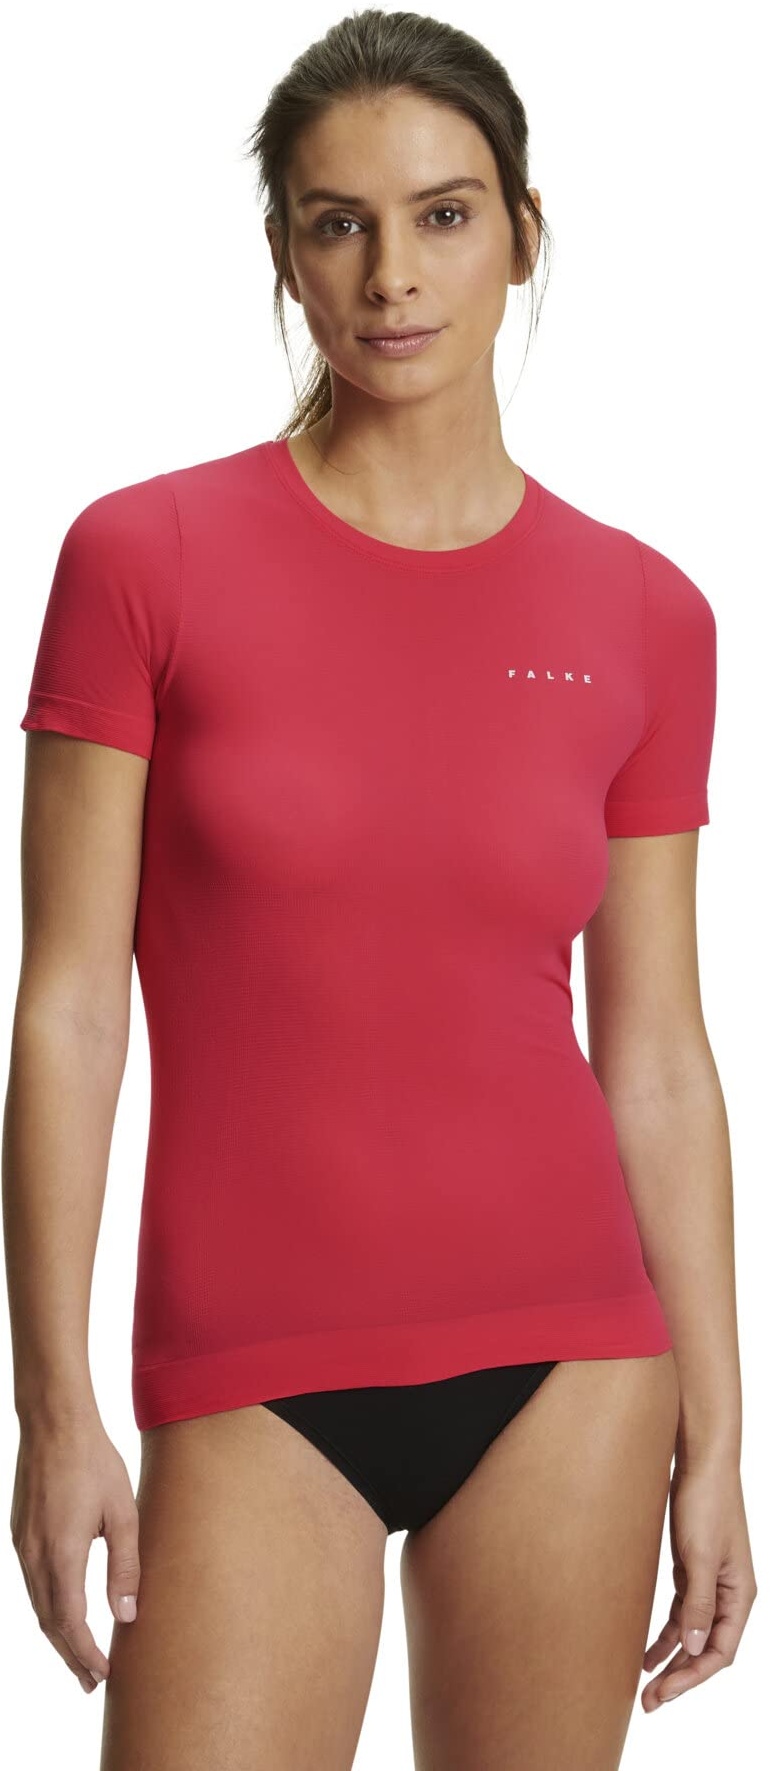 FALKE Damen Baselayer-Shirt Ultralight Cool Round Neck W S/S SH Funktionsmaterial Schnelltrocknend 1 Stück, Rot (Rose 8564), S